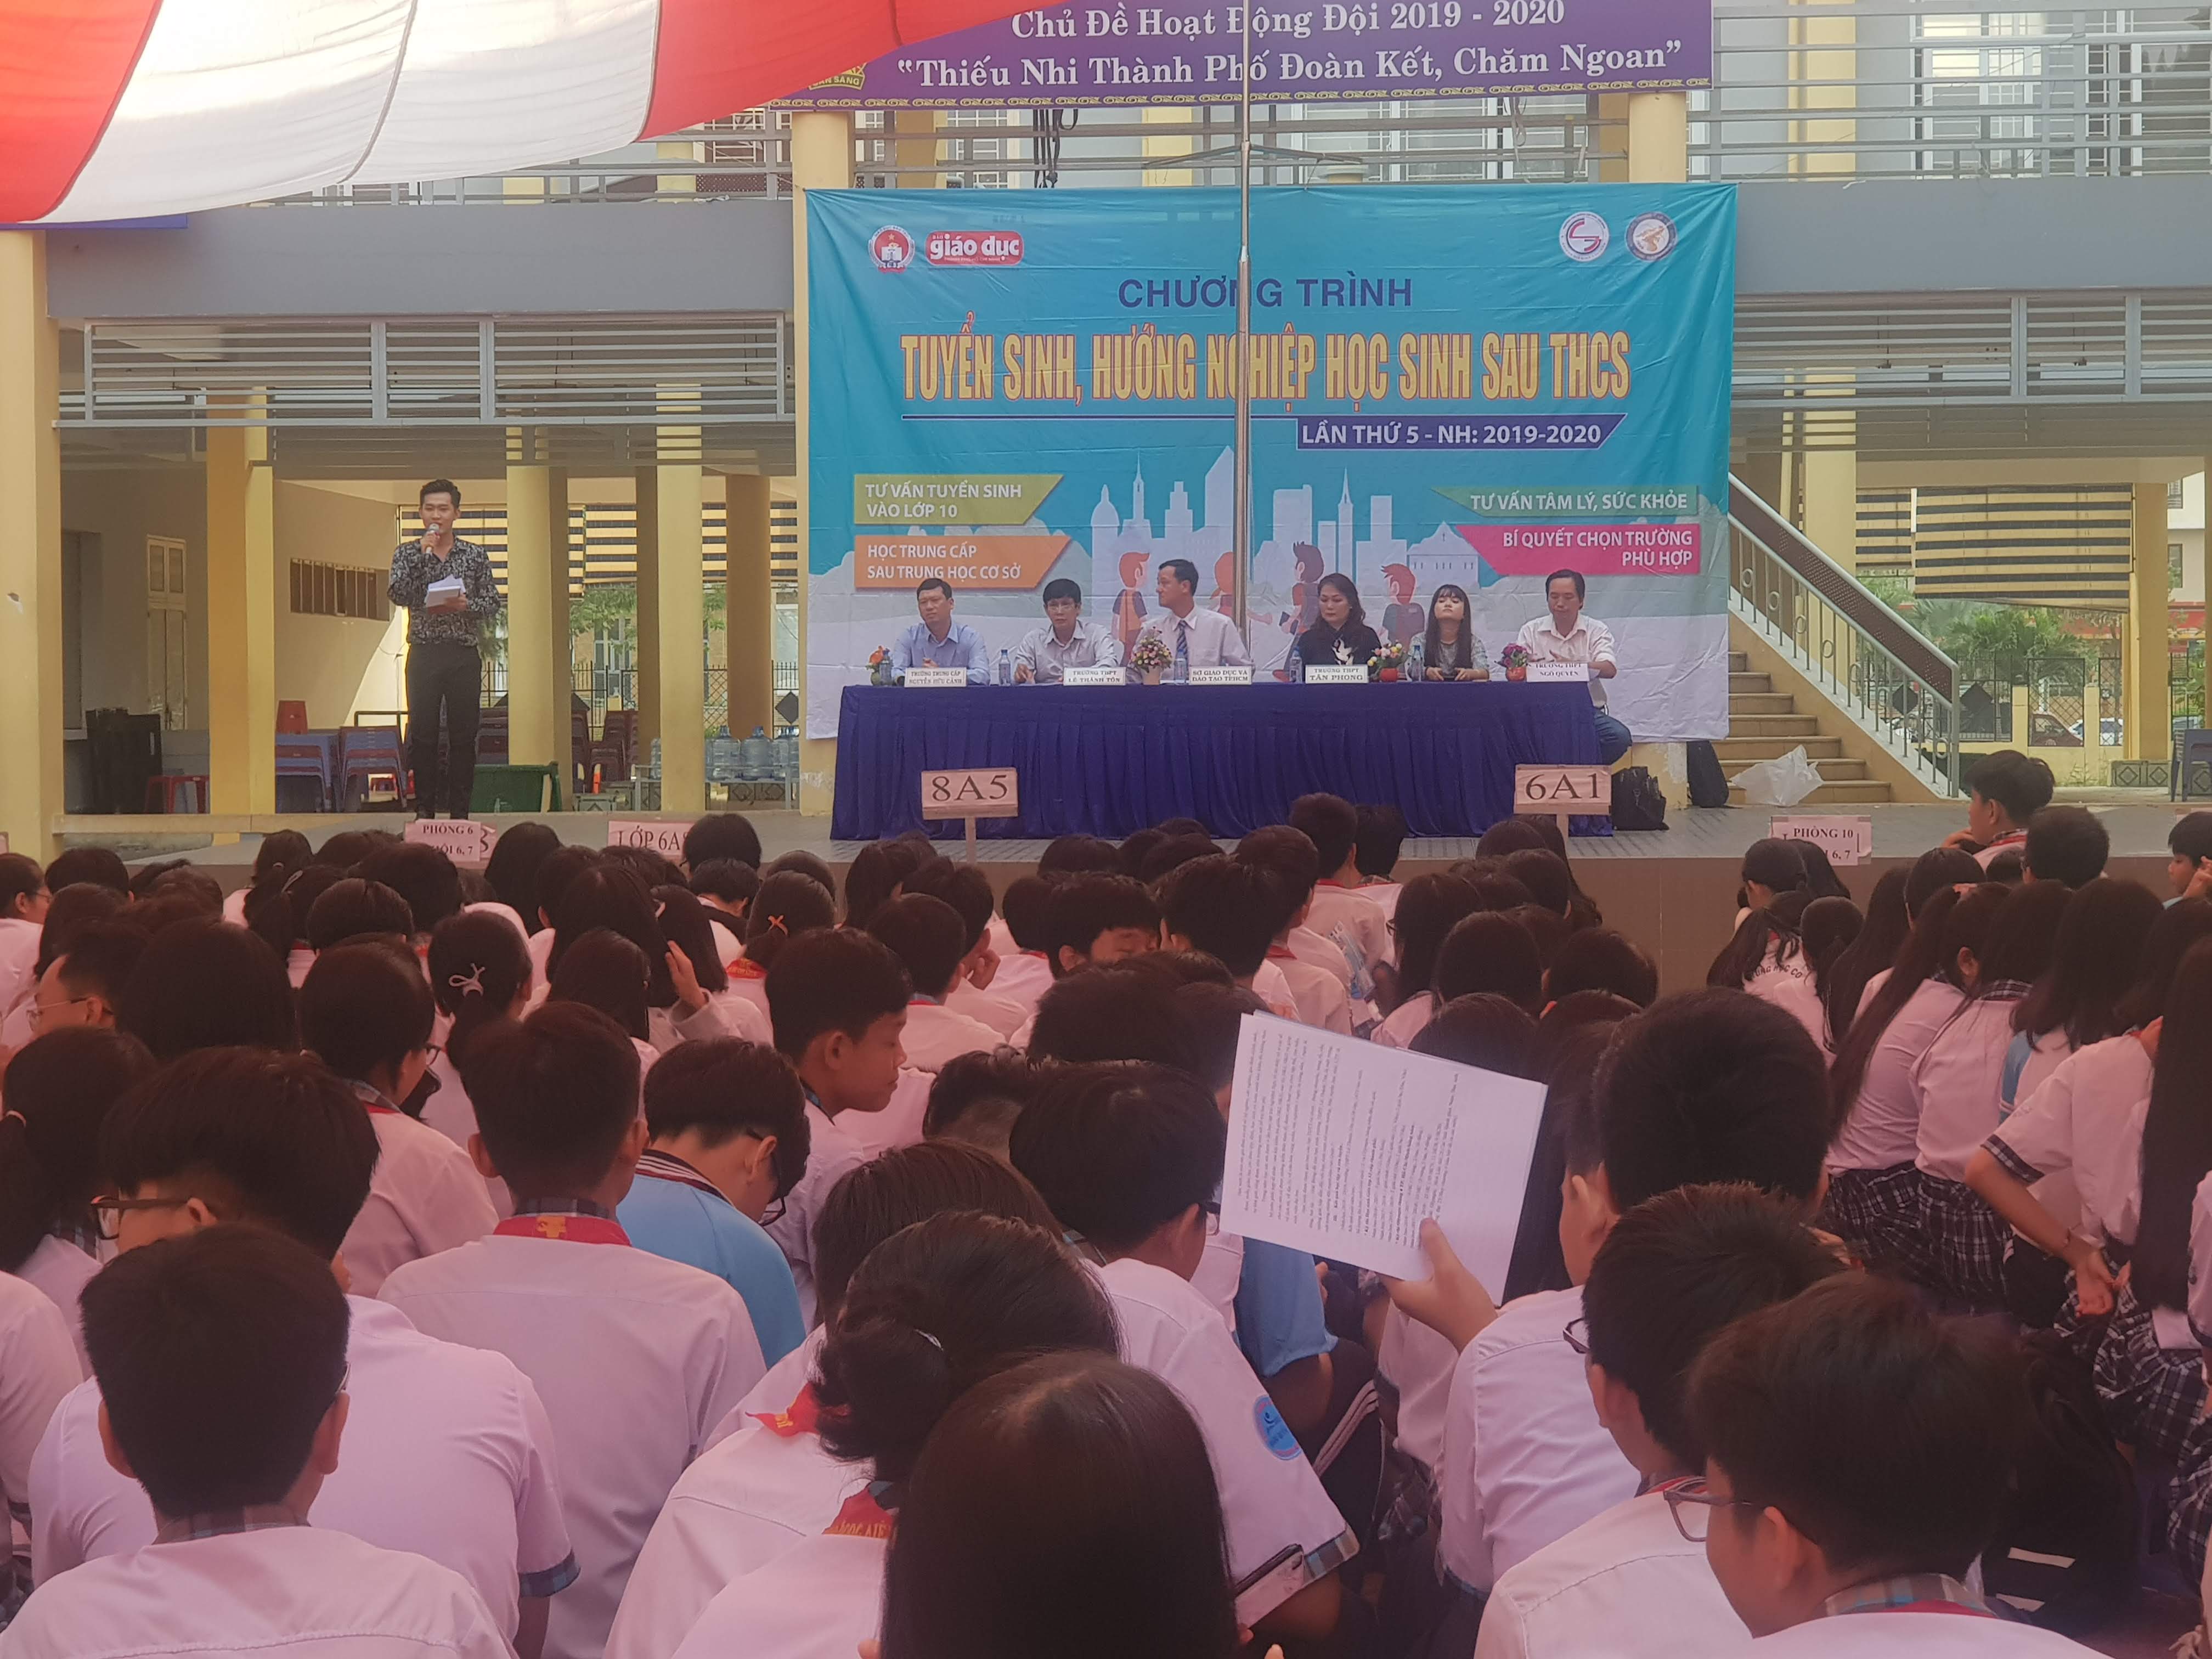 Hoạt Động Tư Vấn, Hướng Nghiệp cho học sinh lớp 9 trường THCS Hoàng Quốc Việt và THCS Phạm Hữu Lầu, Quận 7